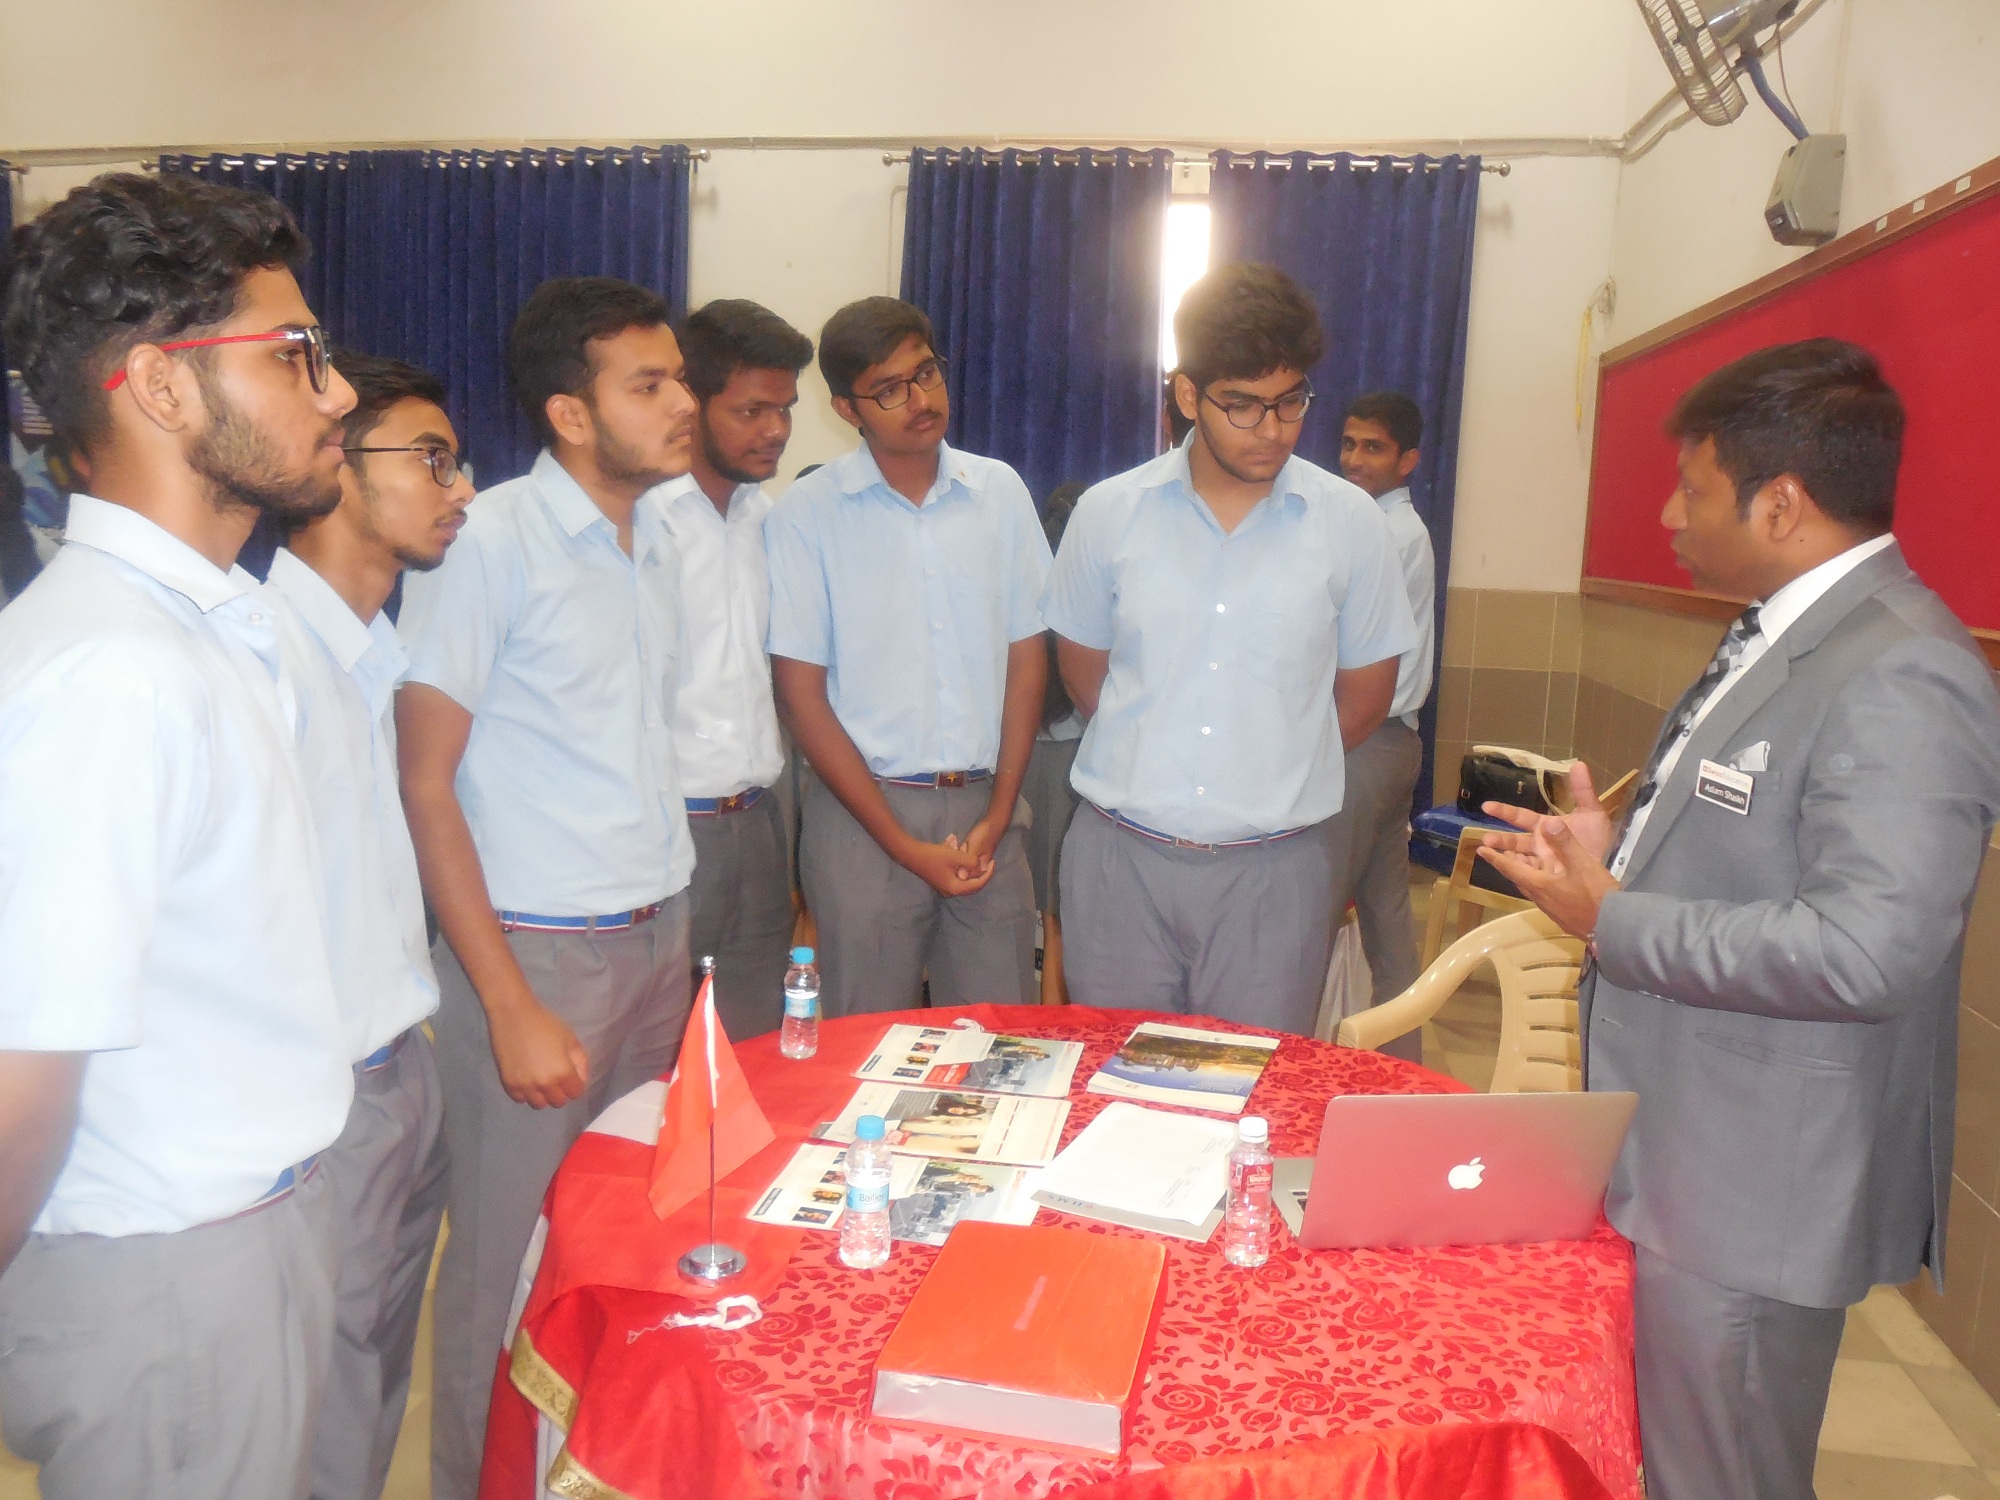 Education Fair held at Sanskar School